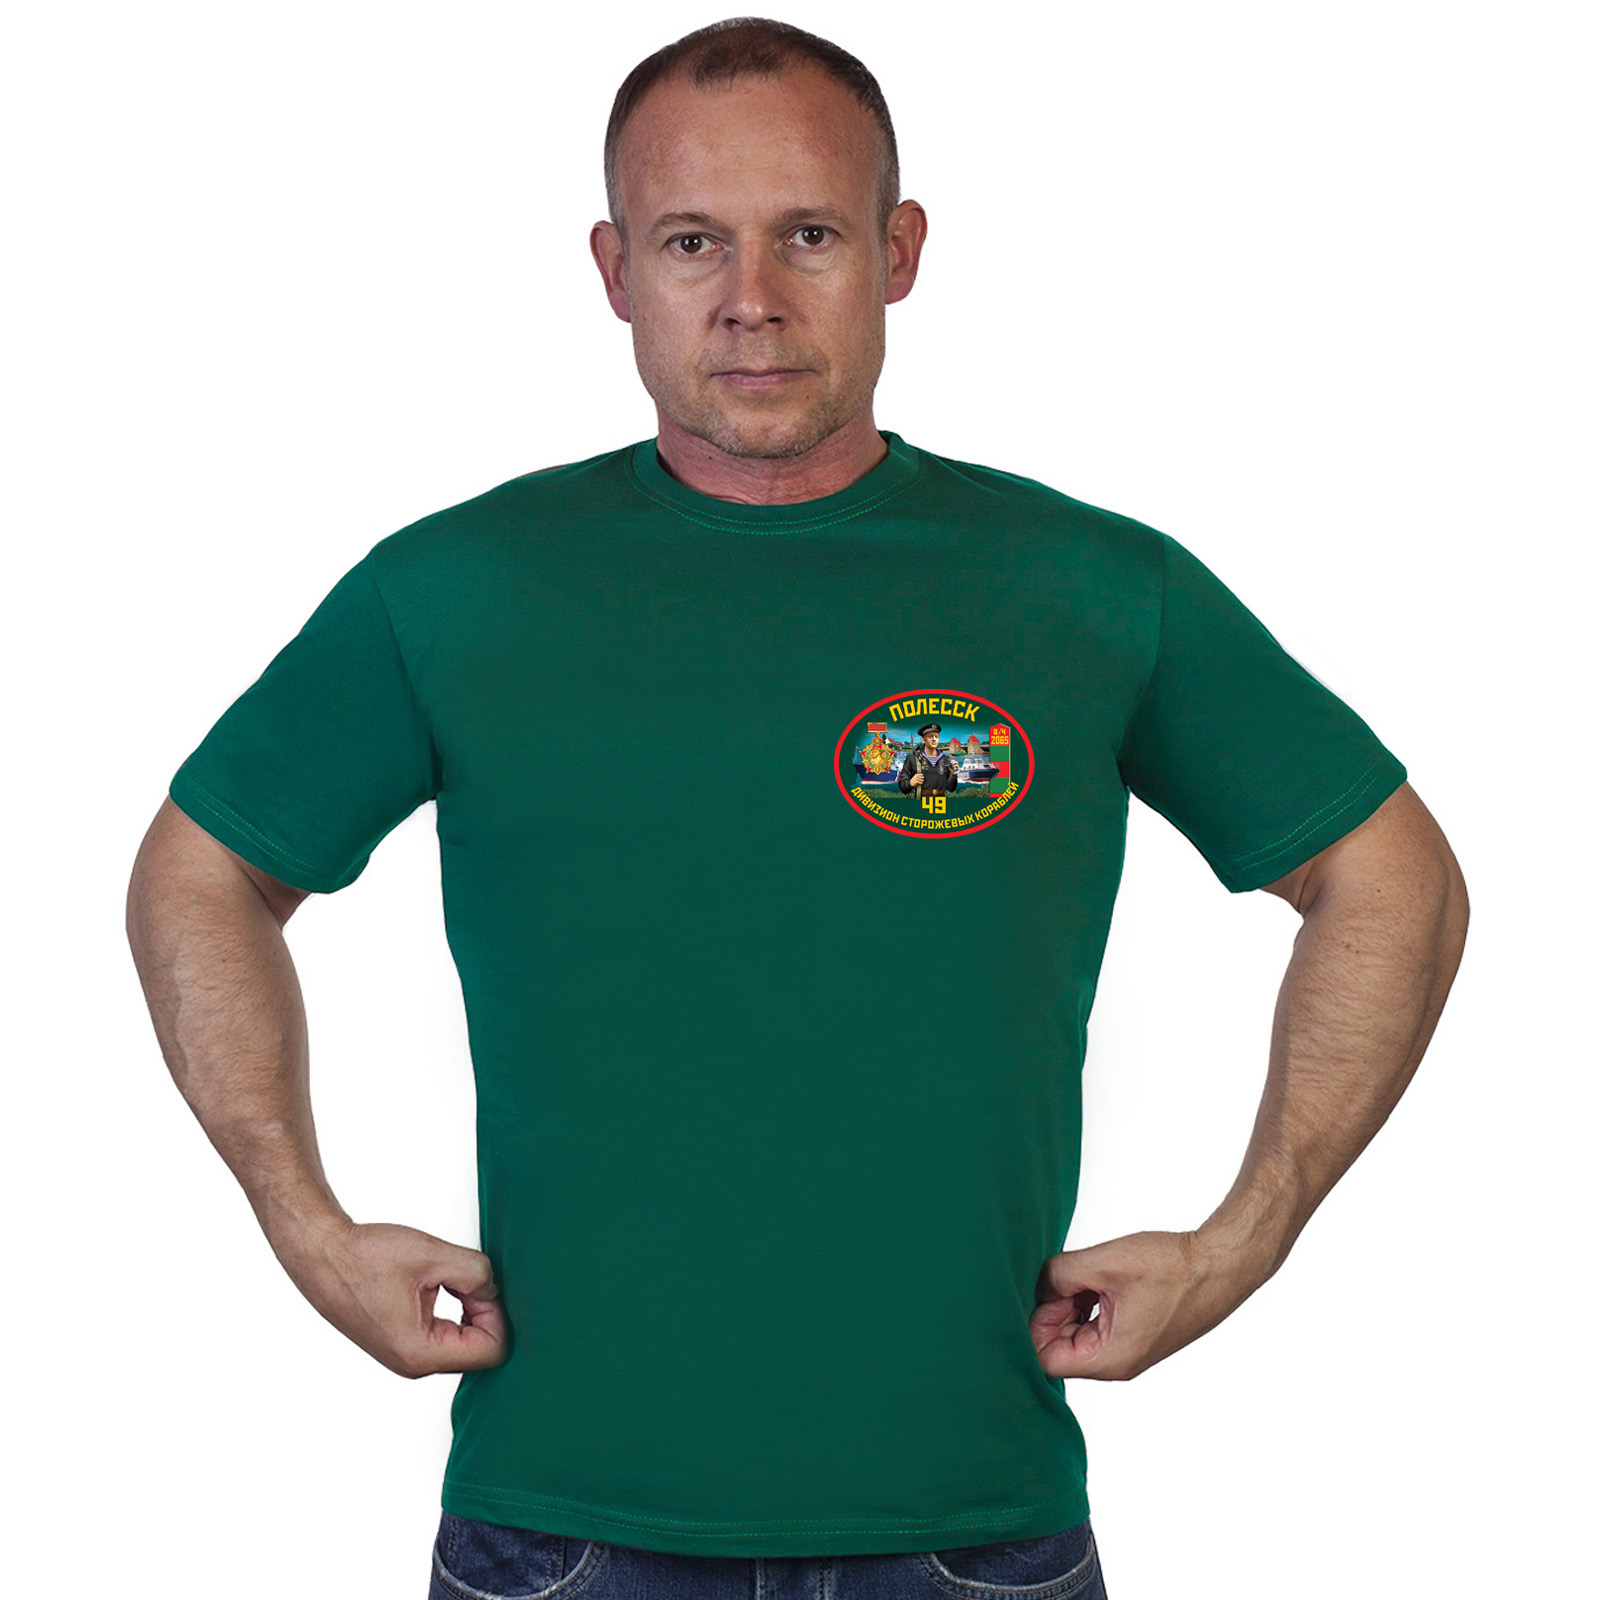 Купить в интернет магазине мужскую футболку 49 дивизион ПСКР Полесск